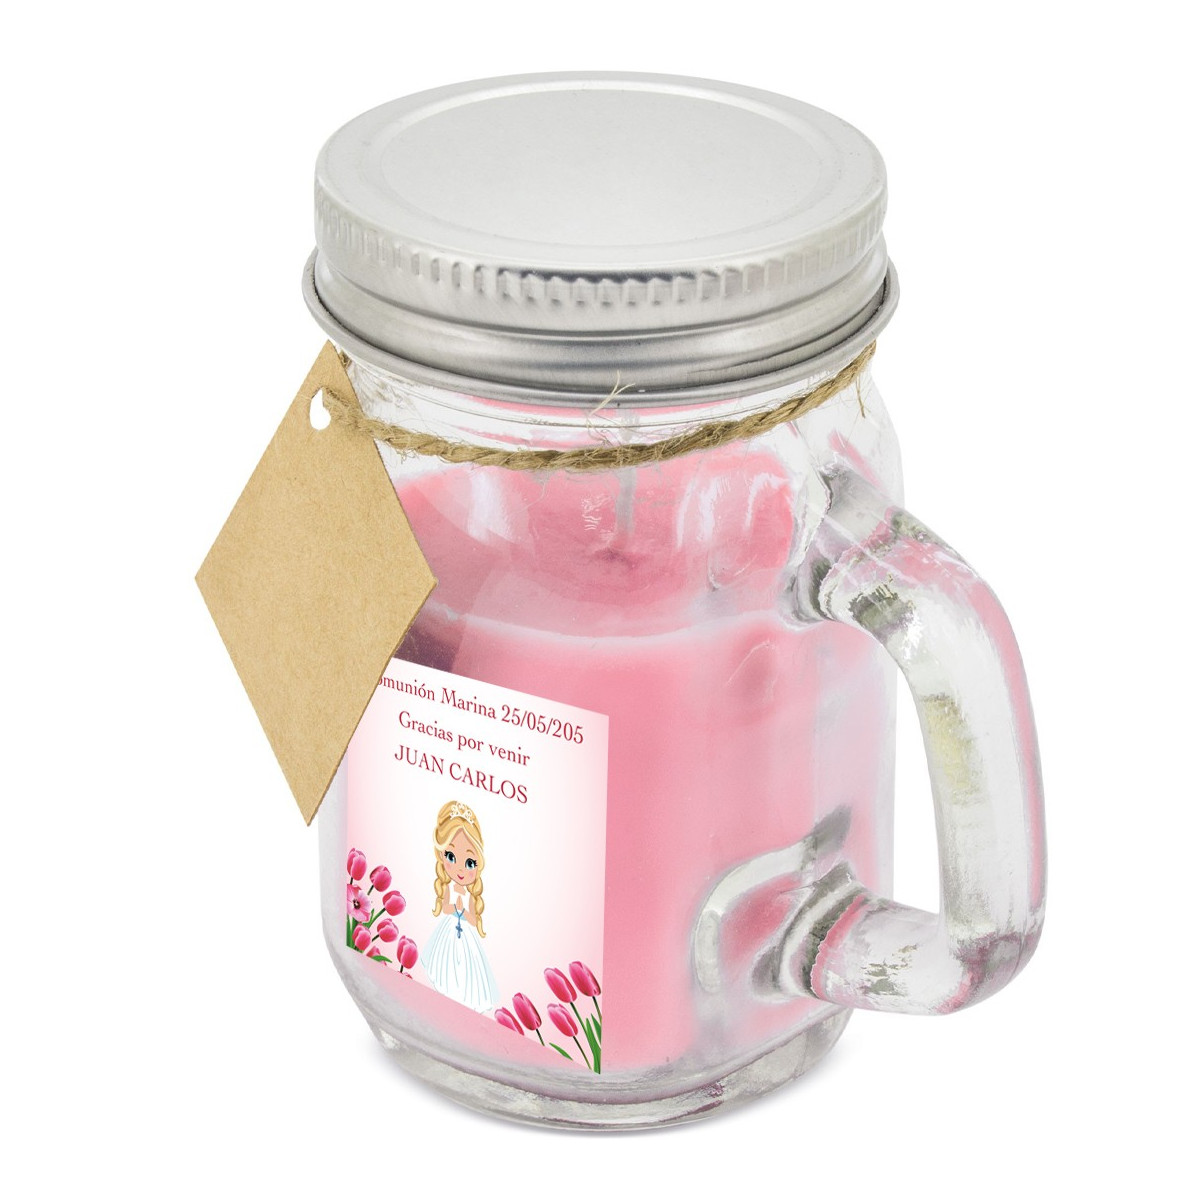 Vela perfumada rosa personalizada com nome da convidada e da comunheira com adesivo